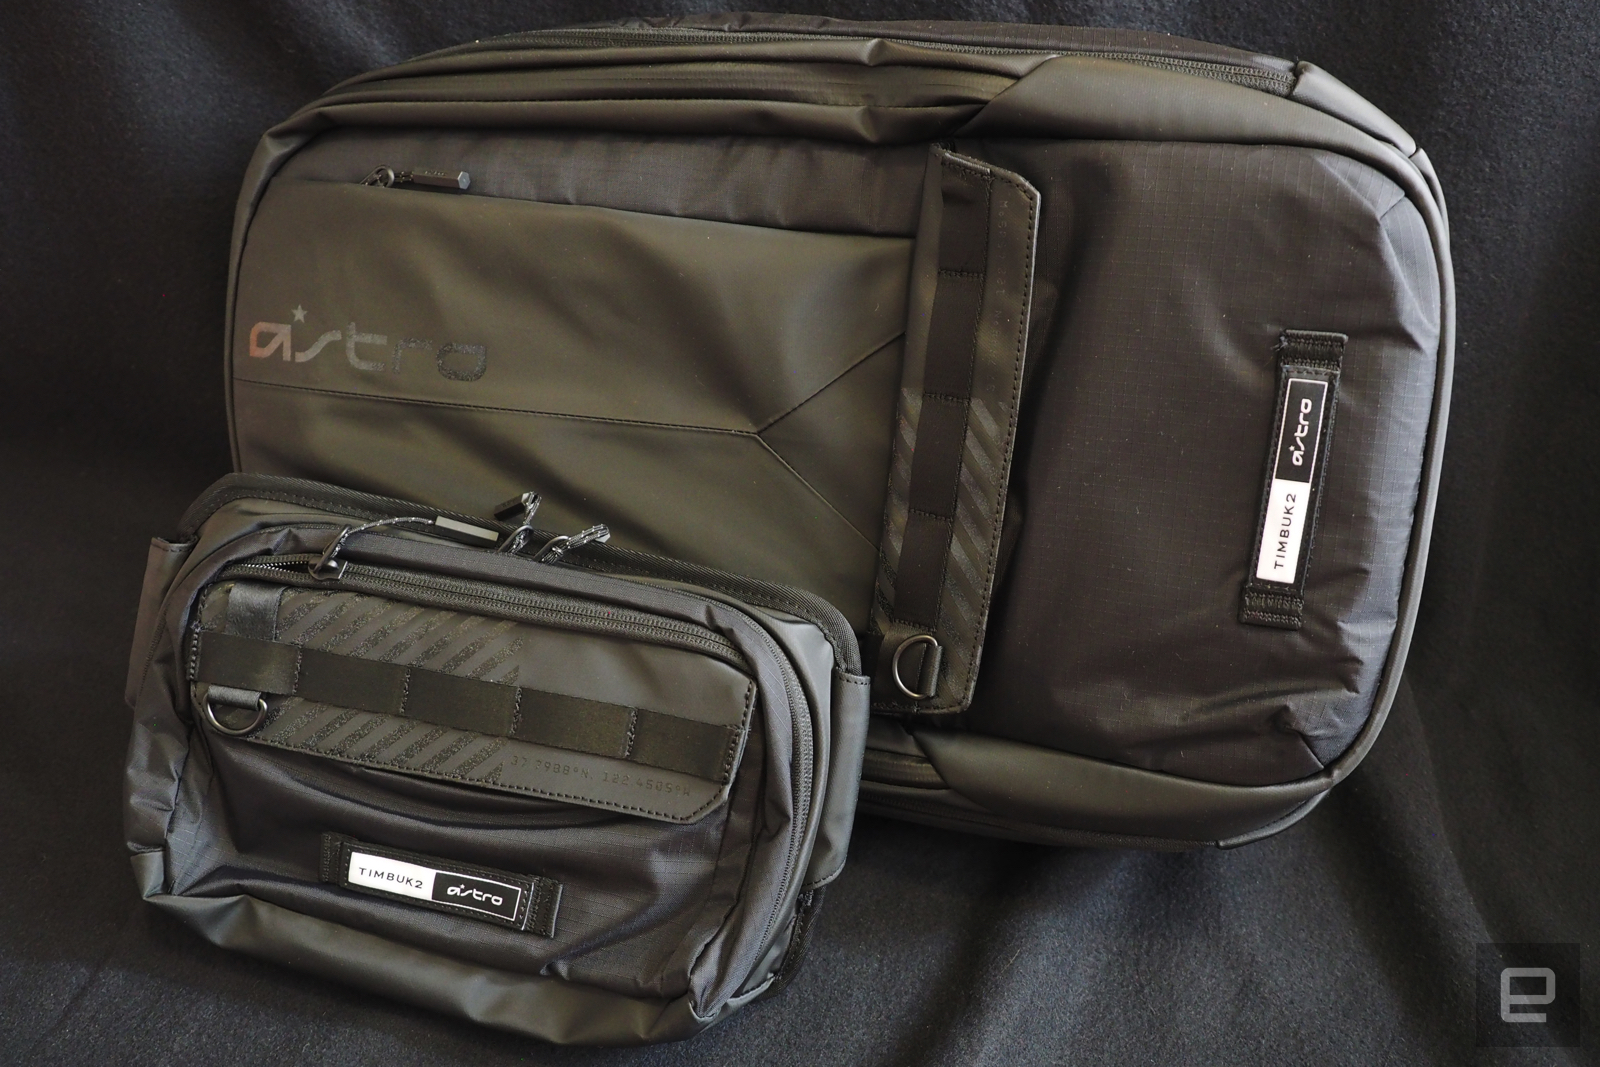 Astro, en iyi oyuncu çantalarını oluşturmak için Timbuk2 ile işbirliği yapıyor | Engadget